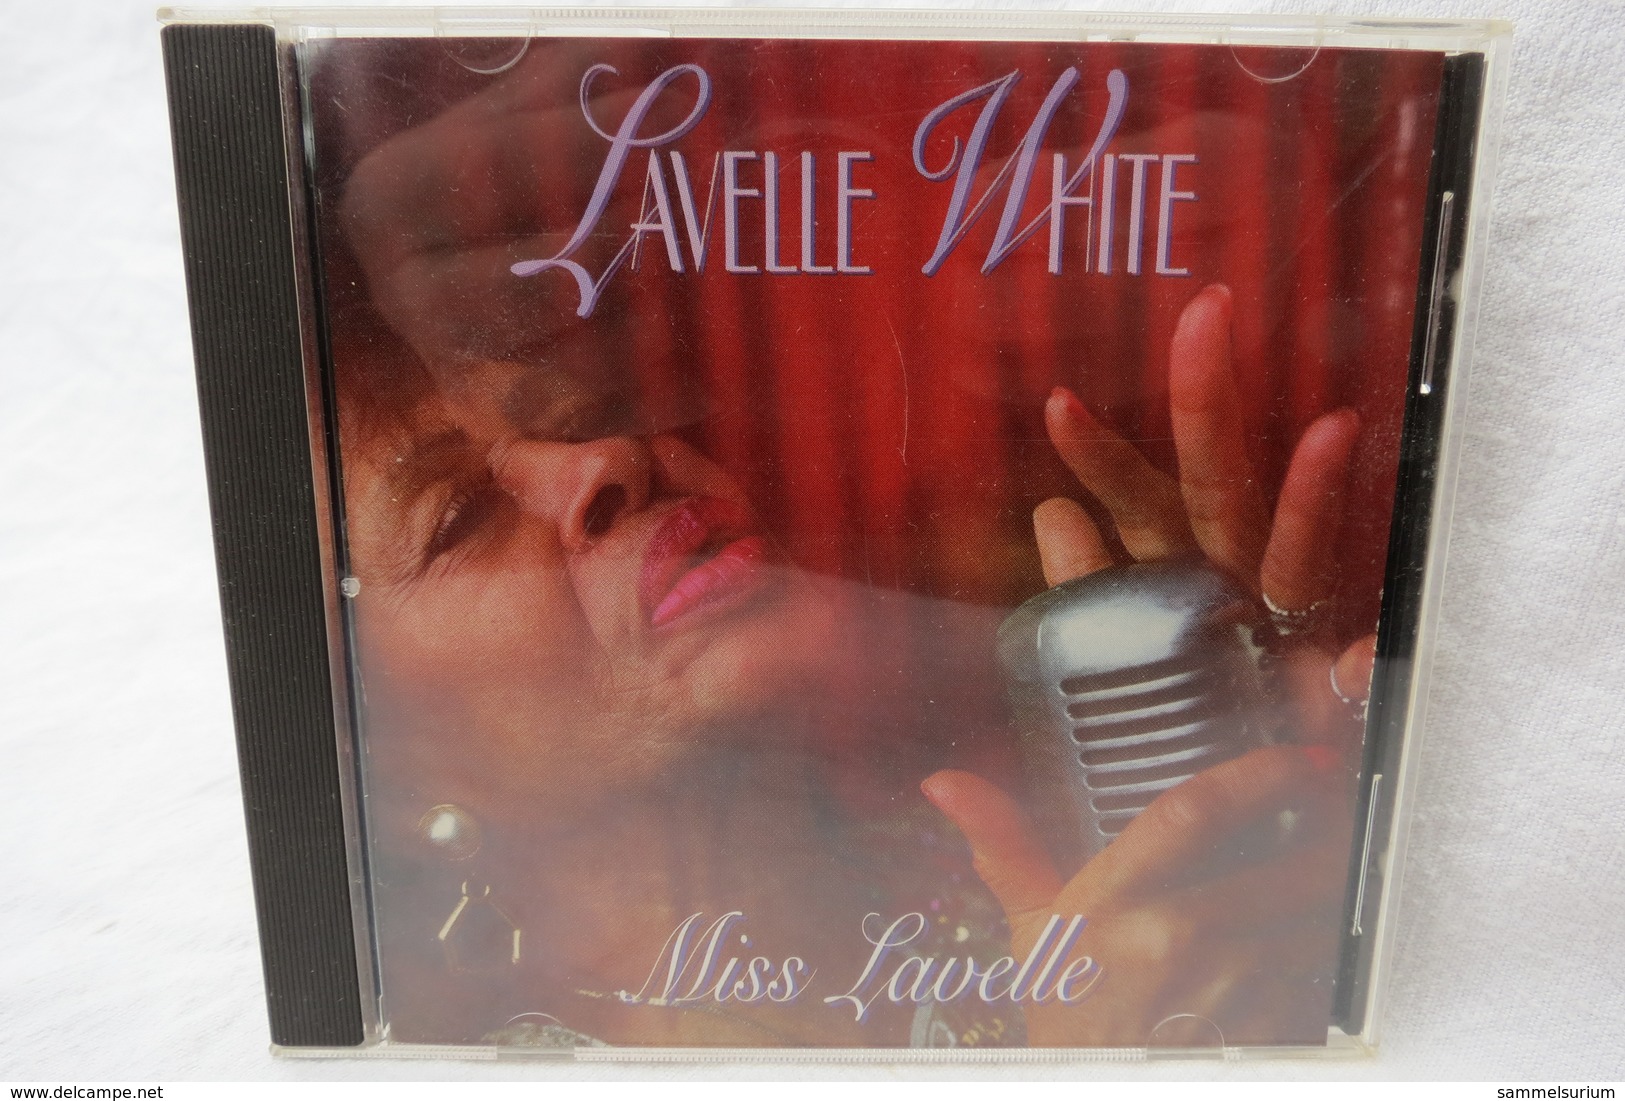 CD "Lavelle White" Miss Lavelle - Blues